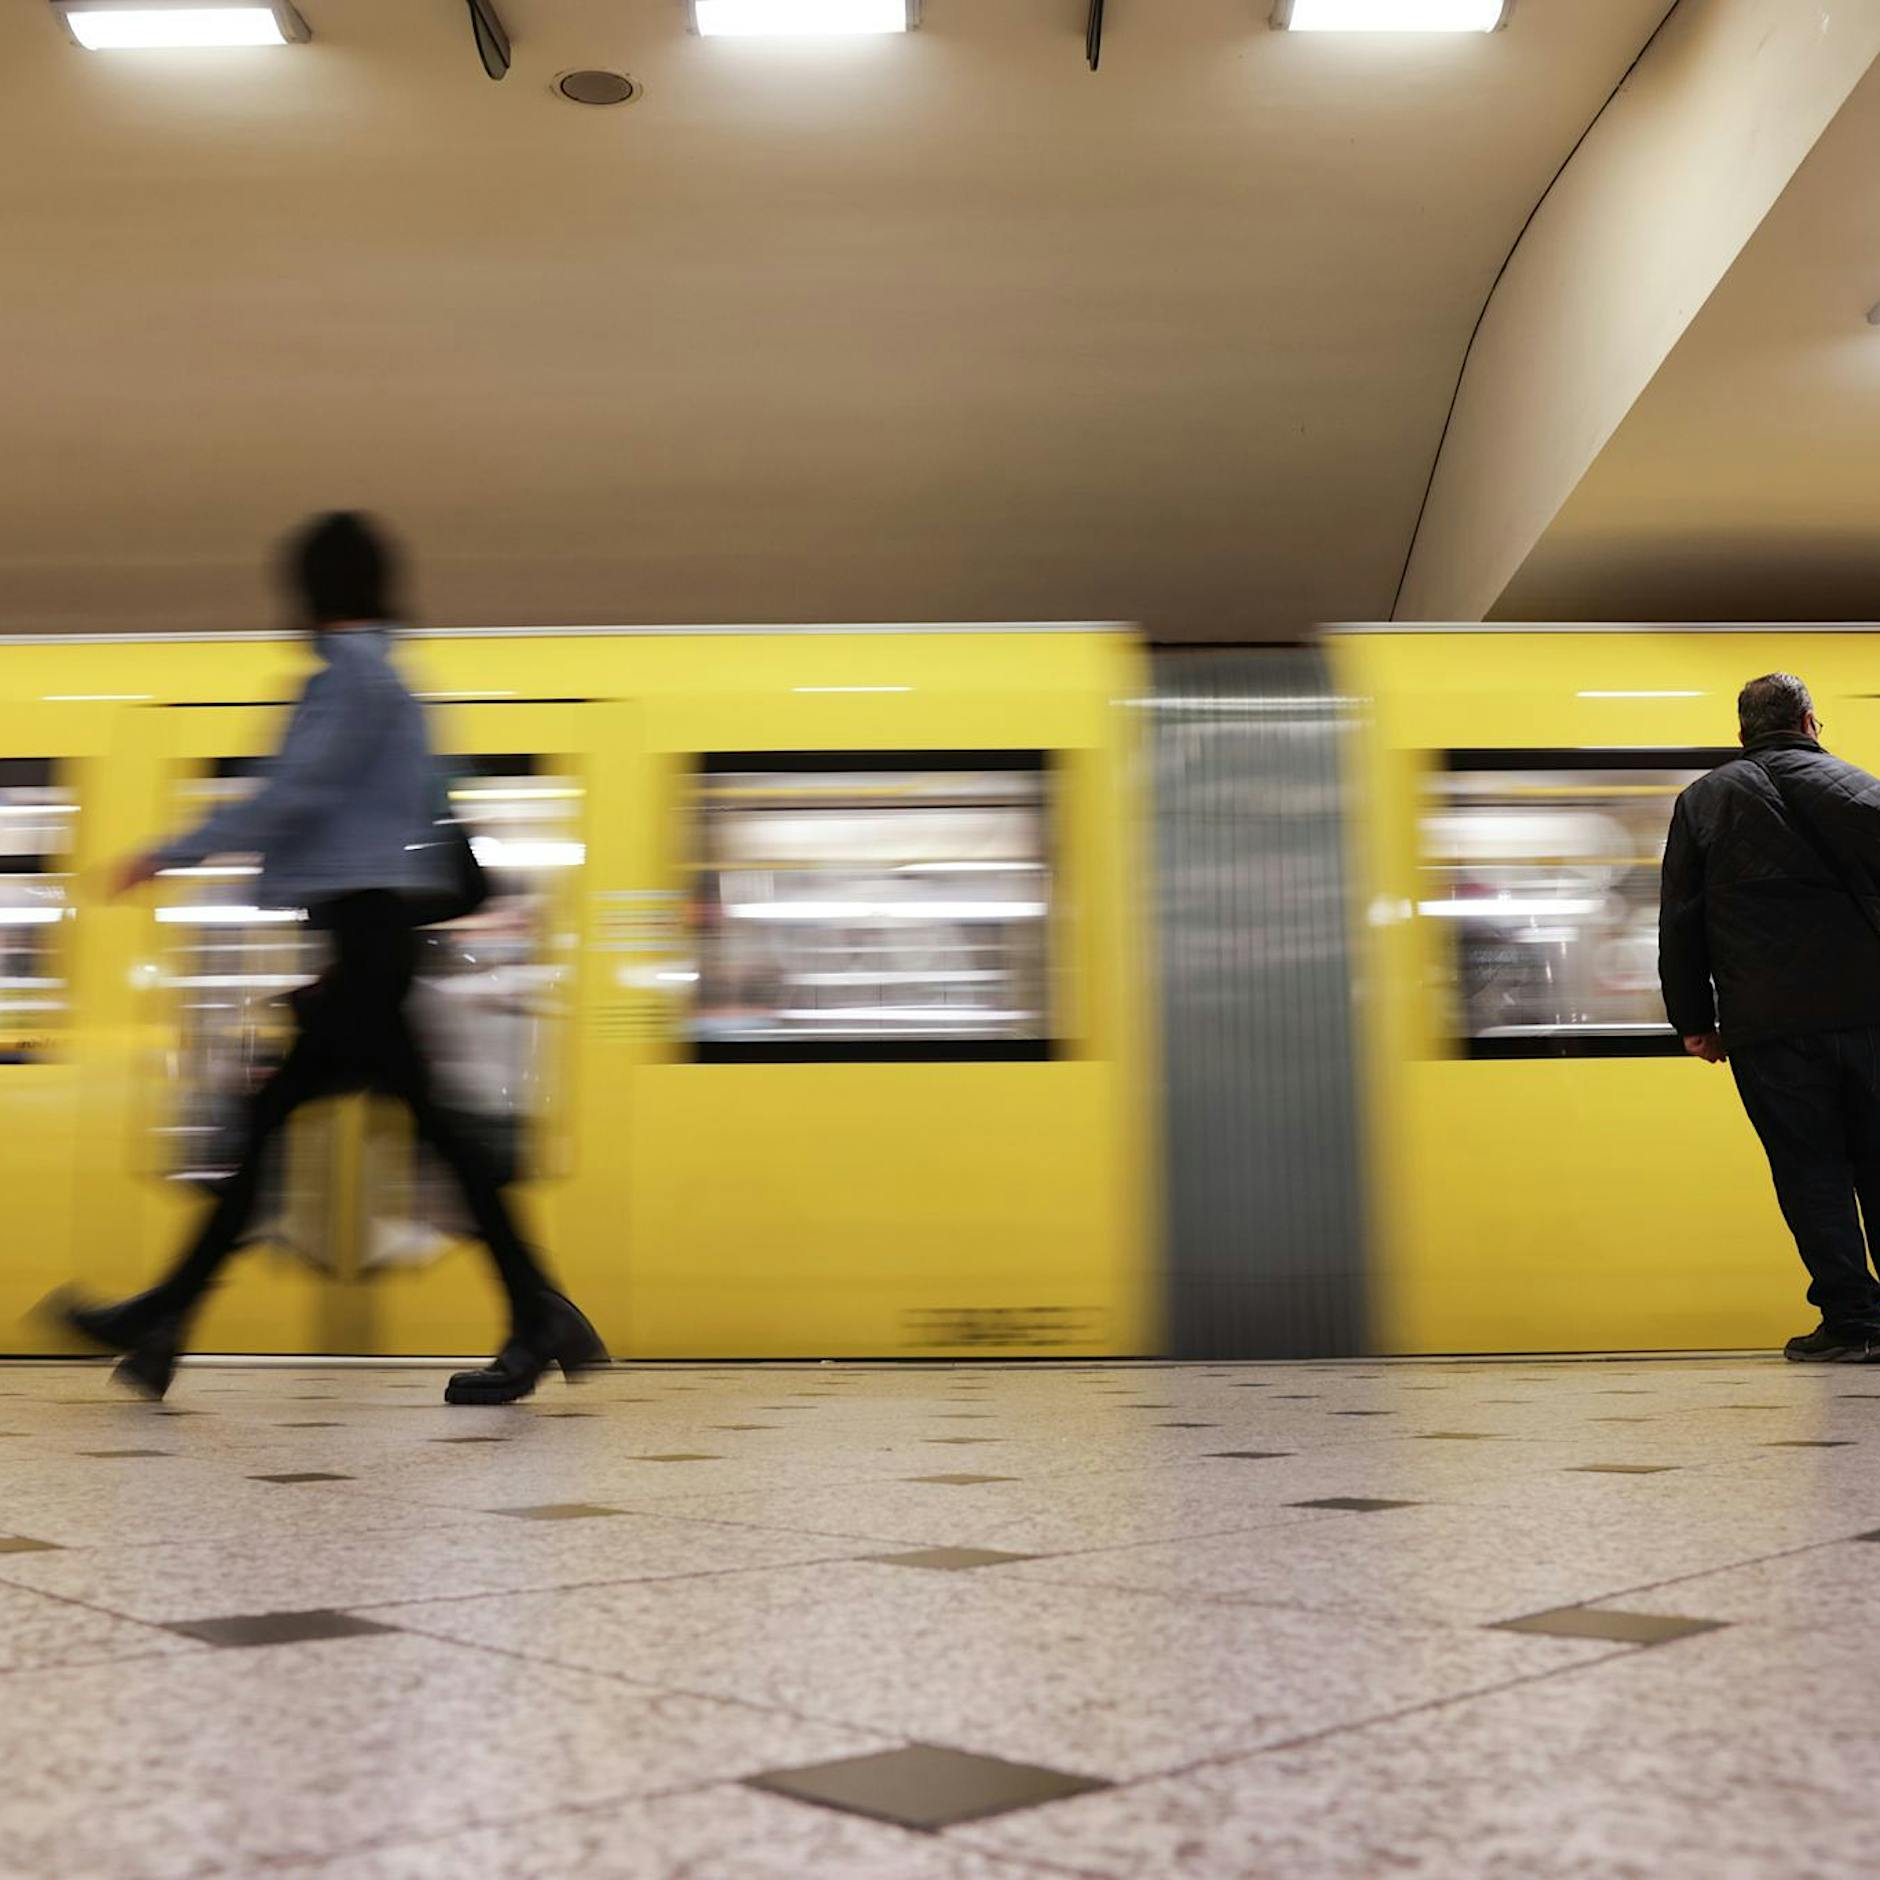 Rassismusvorwurf in der Berliner U-Bahn: Was wurde eigentlich aus dem BVG-Fahrer?